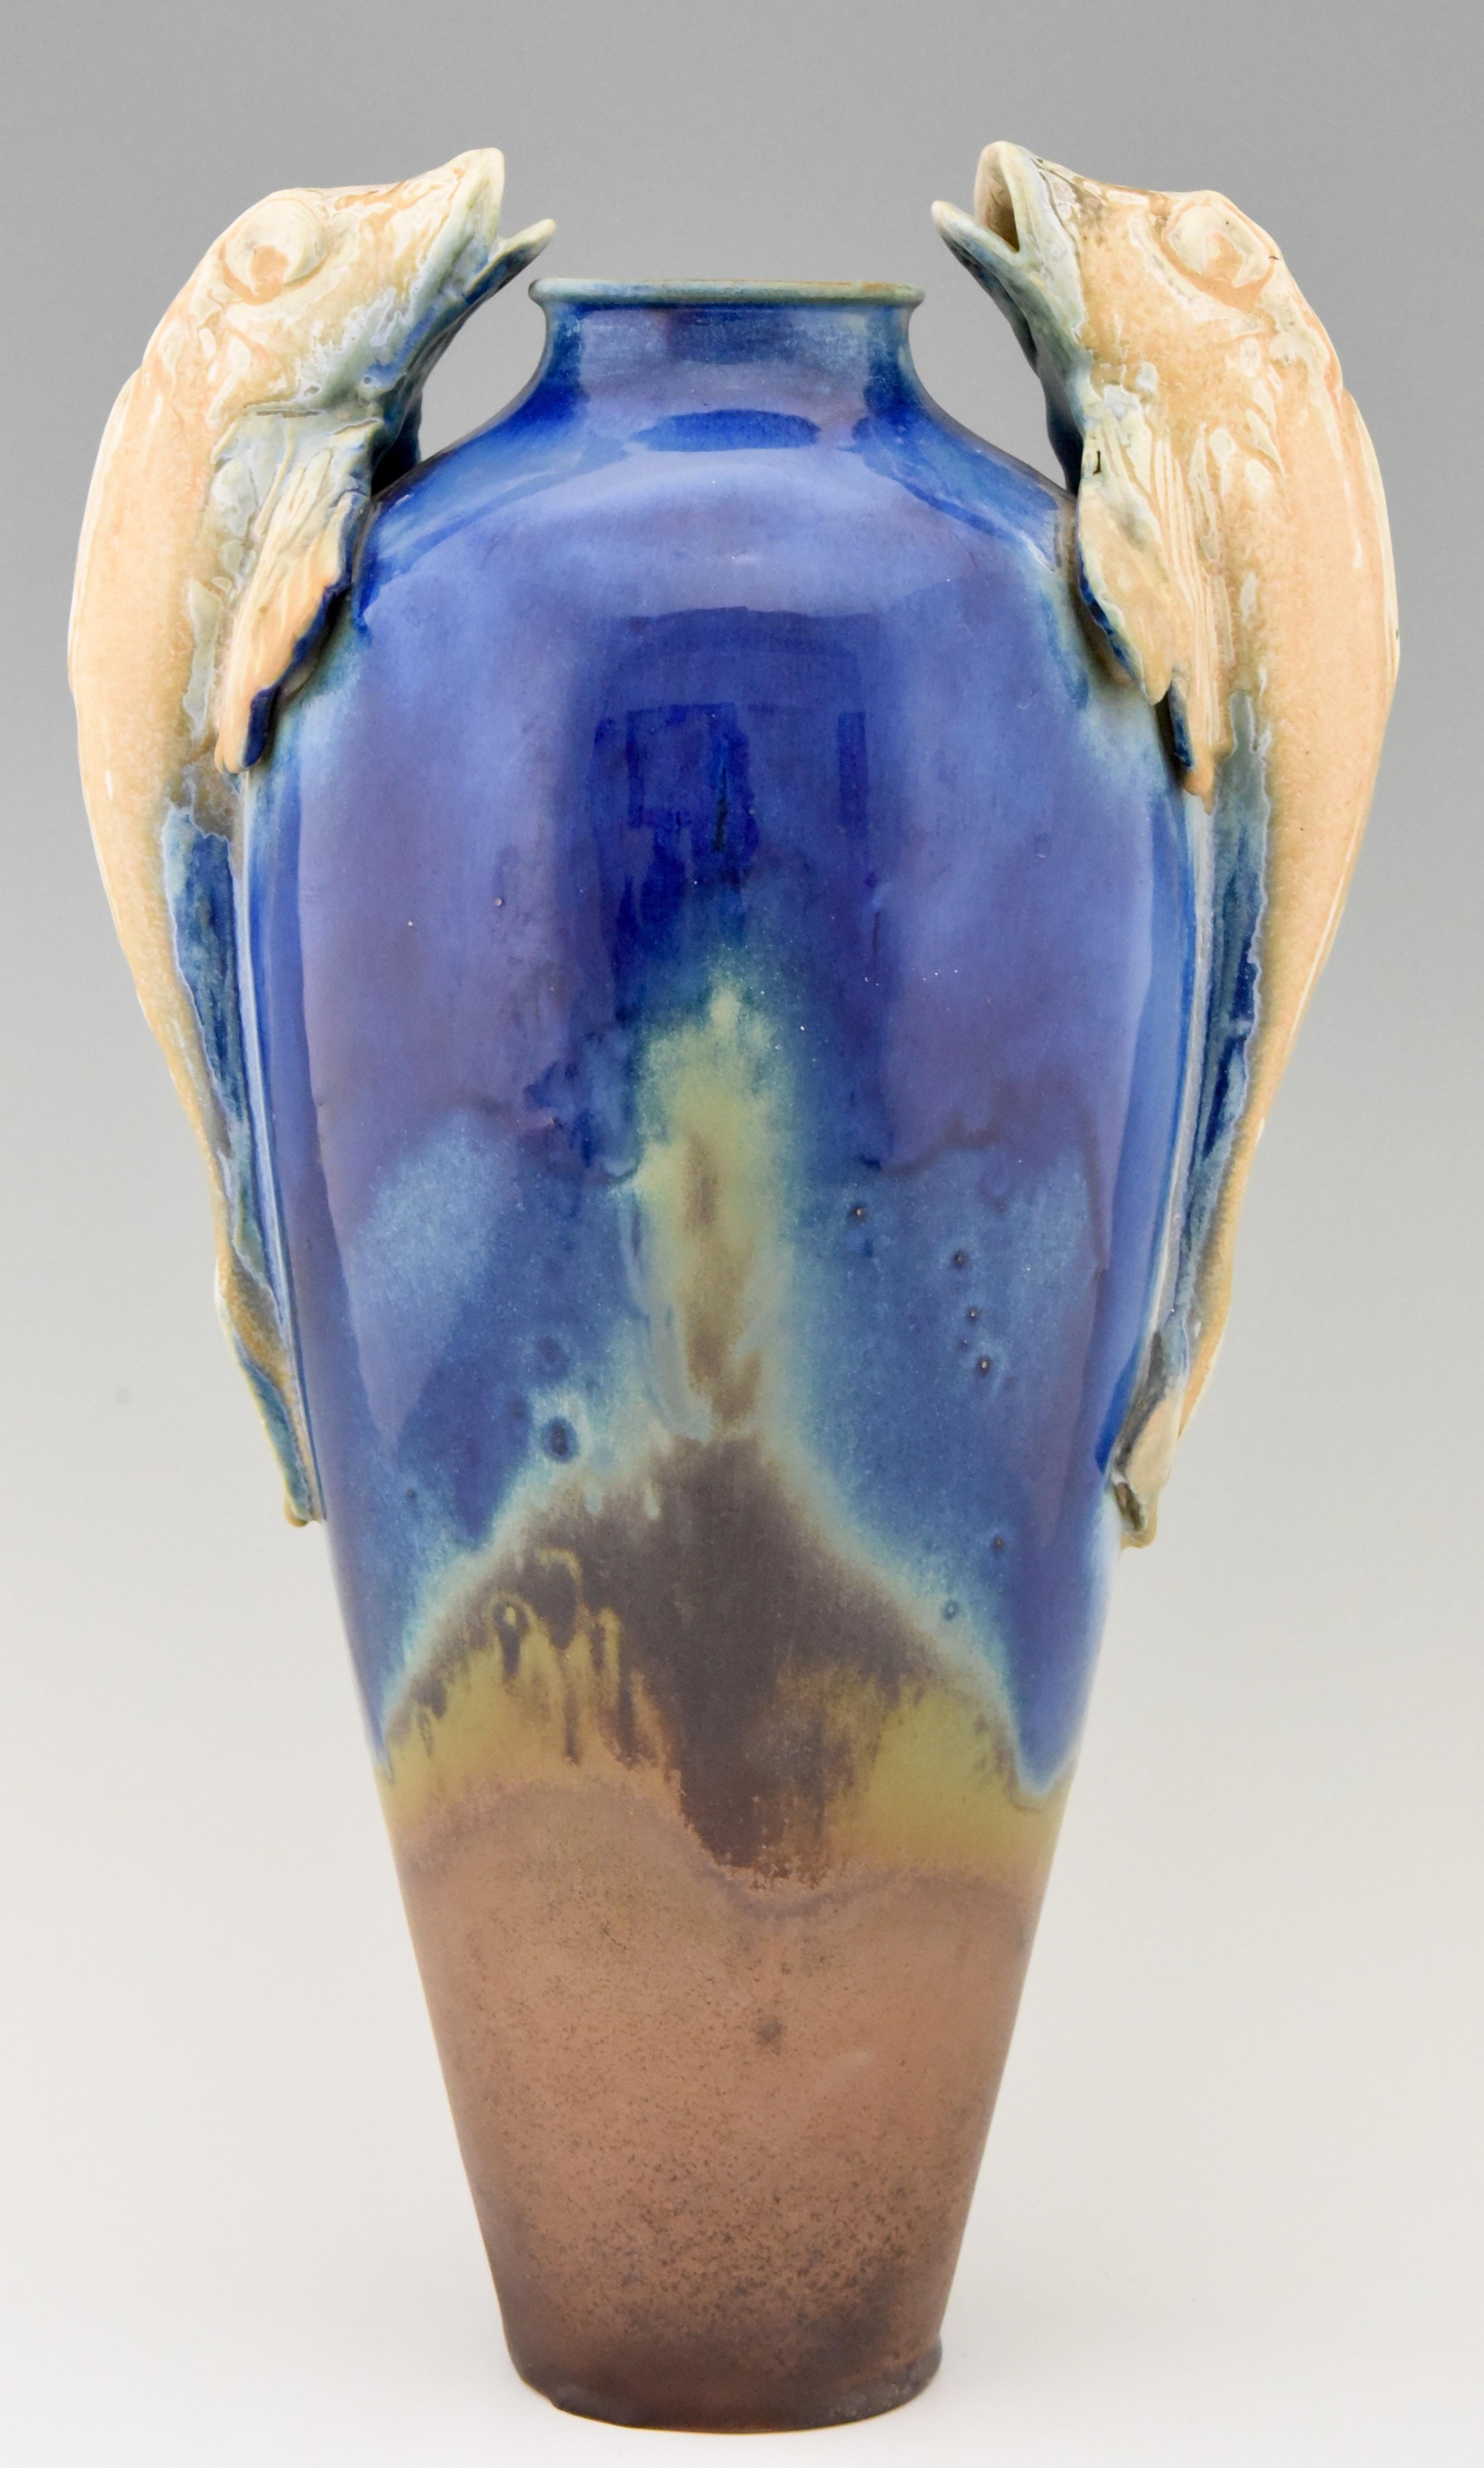 Magnifique grand vase Art Déco avec des anses en forme de poisson en céramique émaillée bleue, beige et marron terracotta. Attribué à Gilbert Méténier. Marqué BR pour Bourg La Bresse, France, 1925.
  